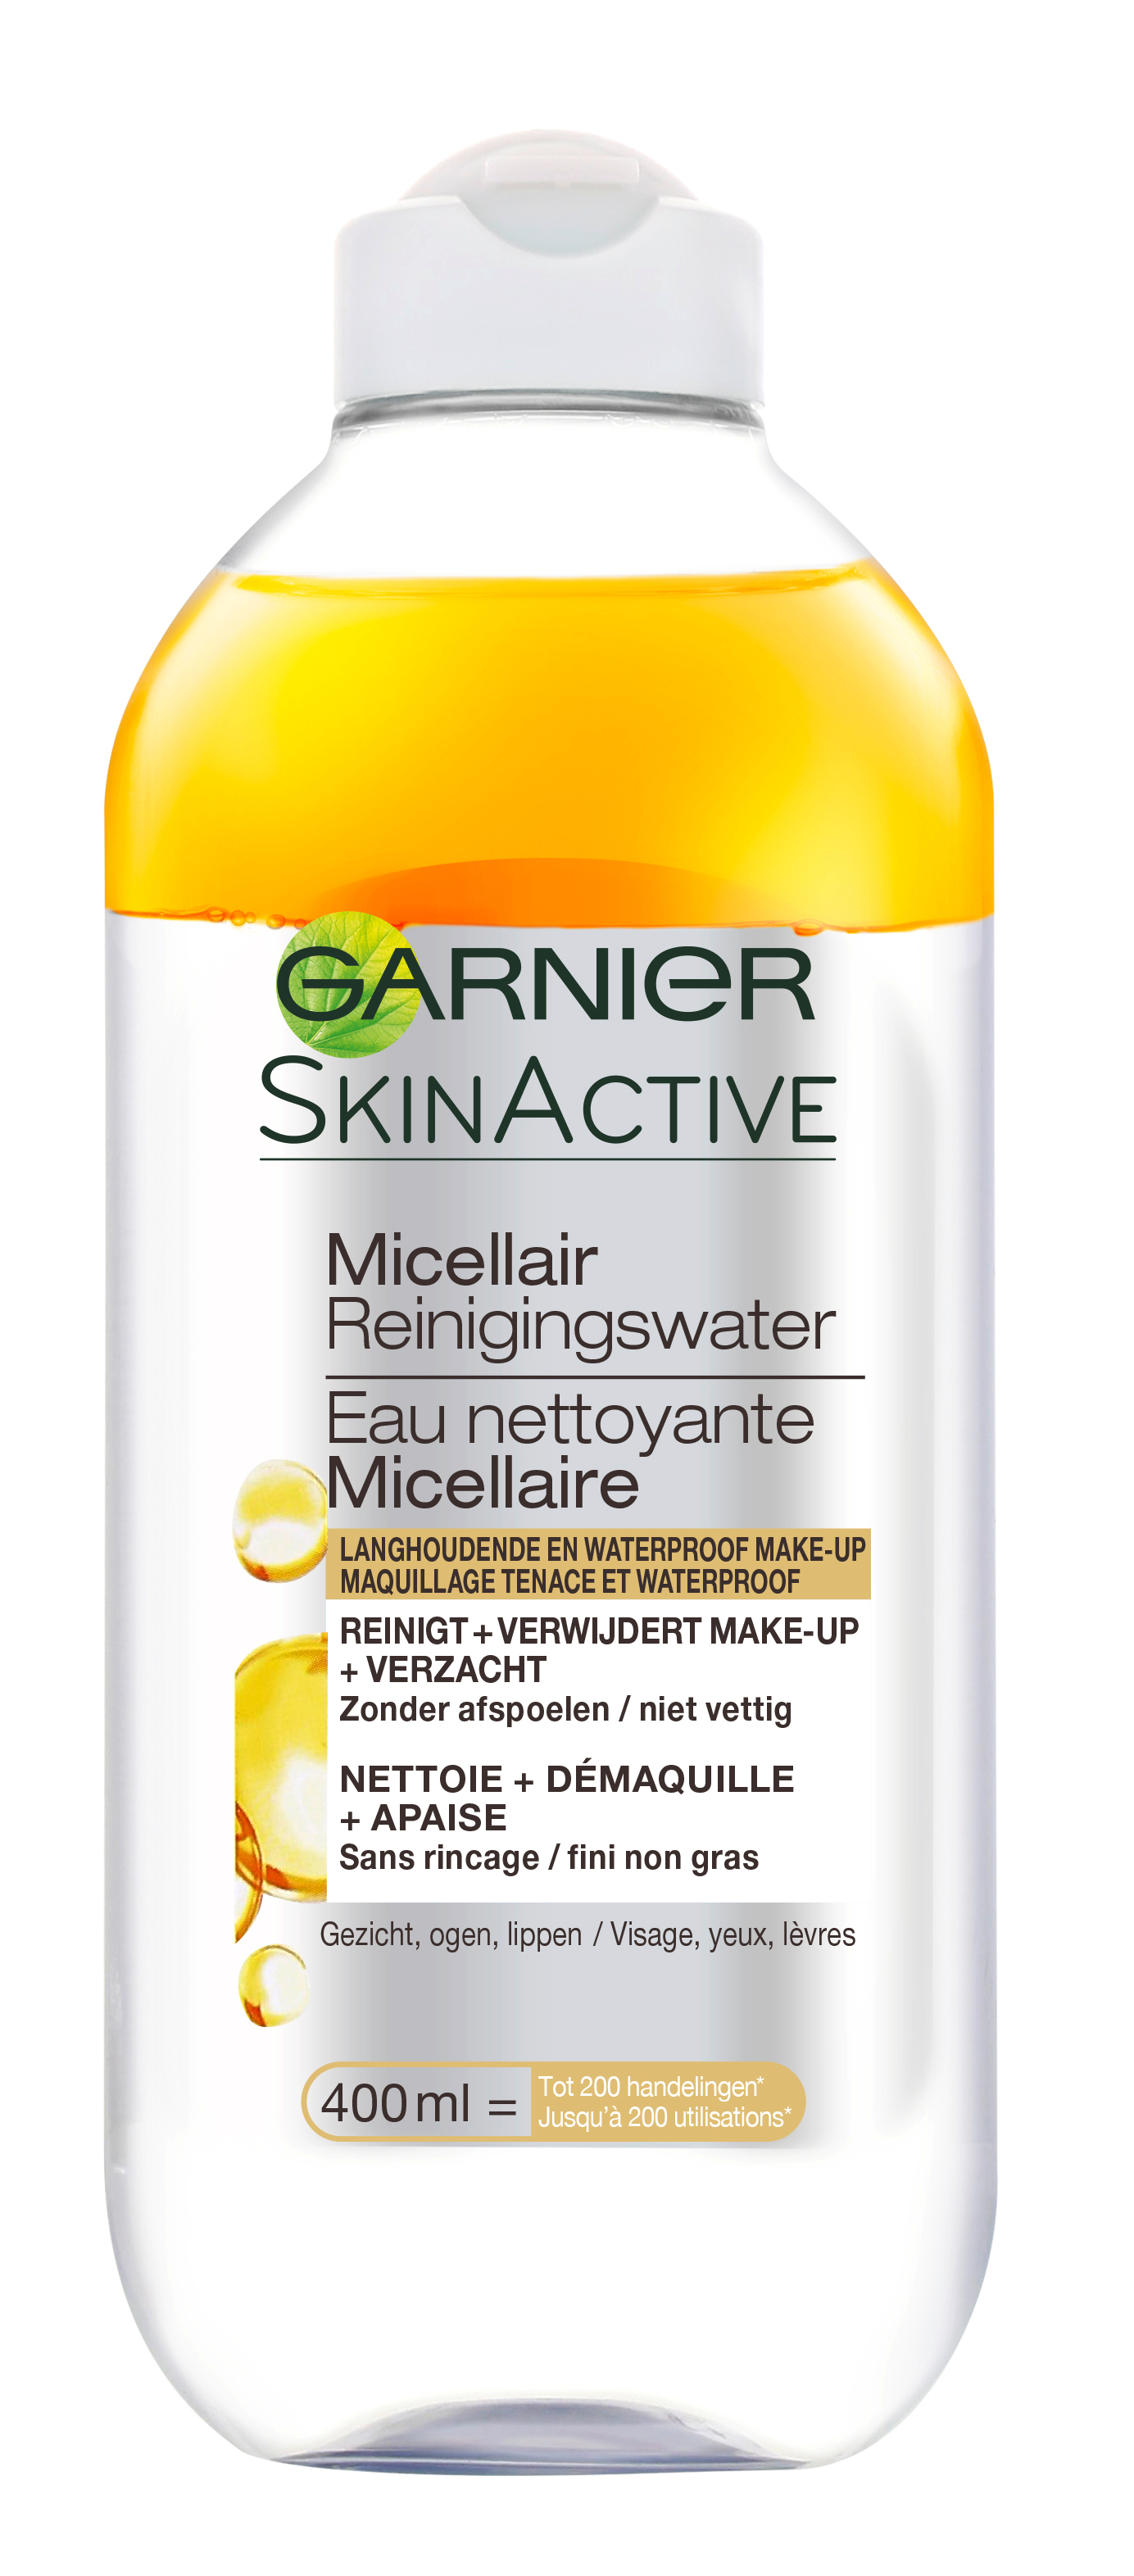 Garnier Skinactive Face SkinActive - Micellair Reinigingswater voor Langhoudende en Waterproof Make-up - 400ml – Reinigingswater